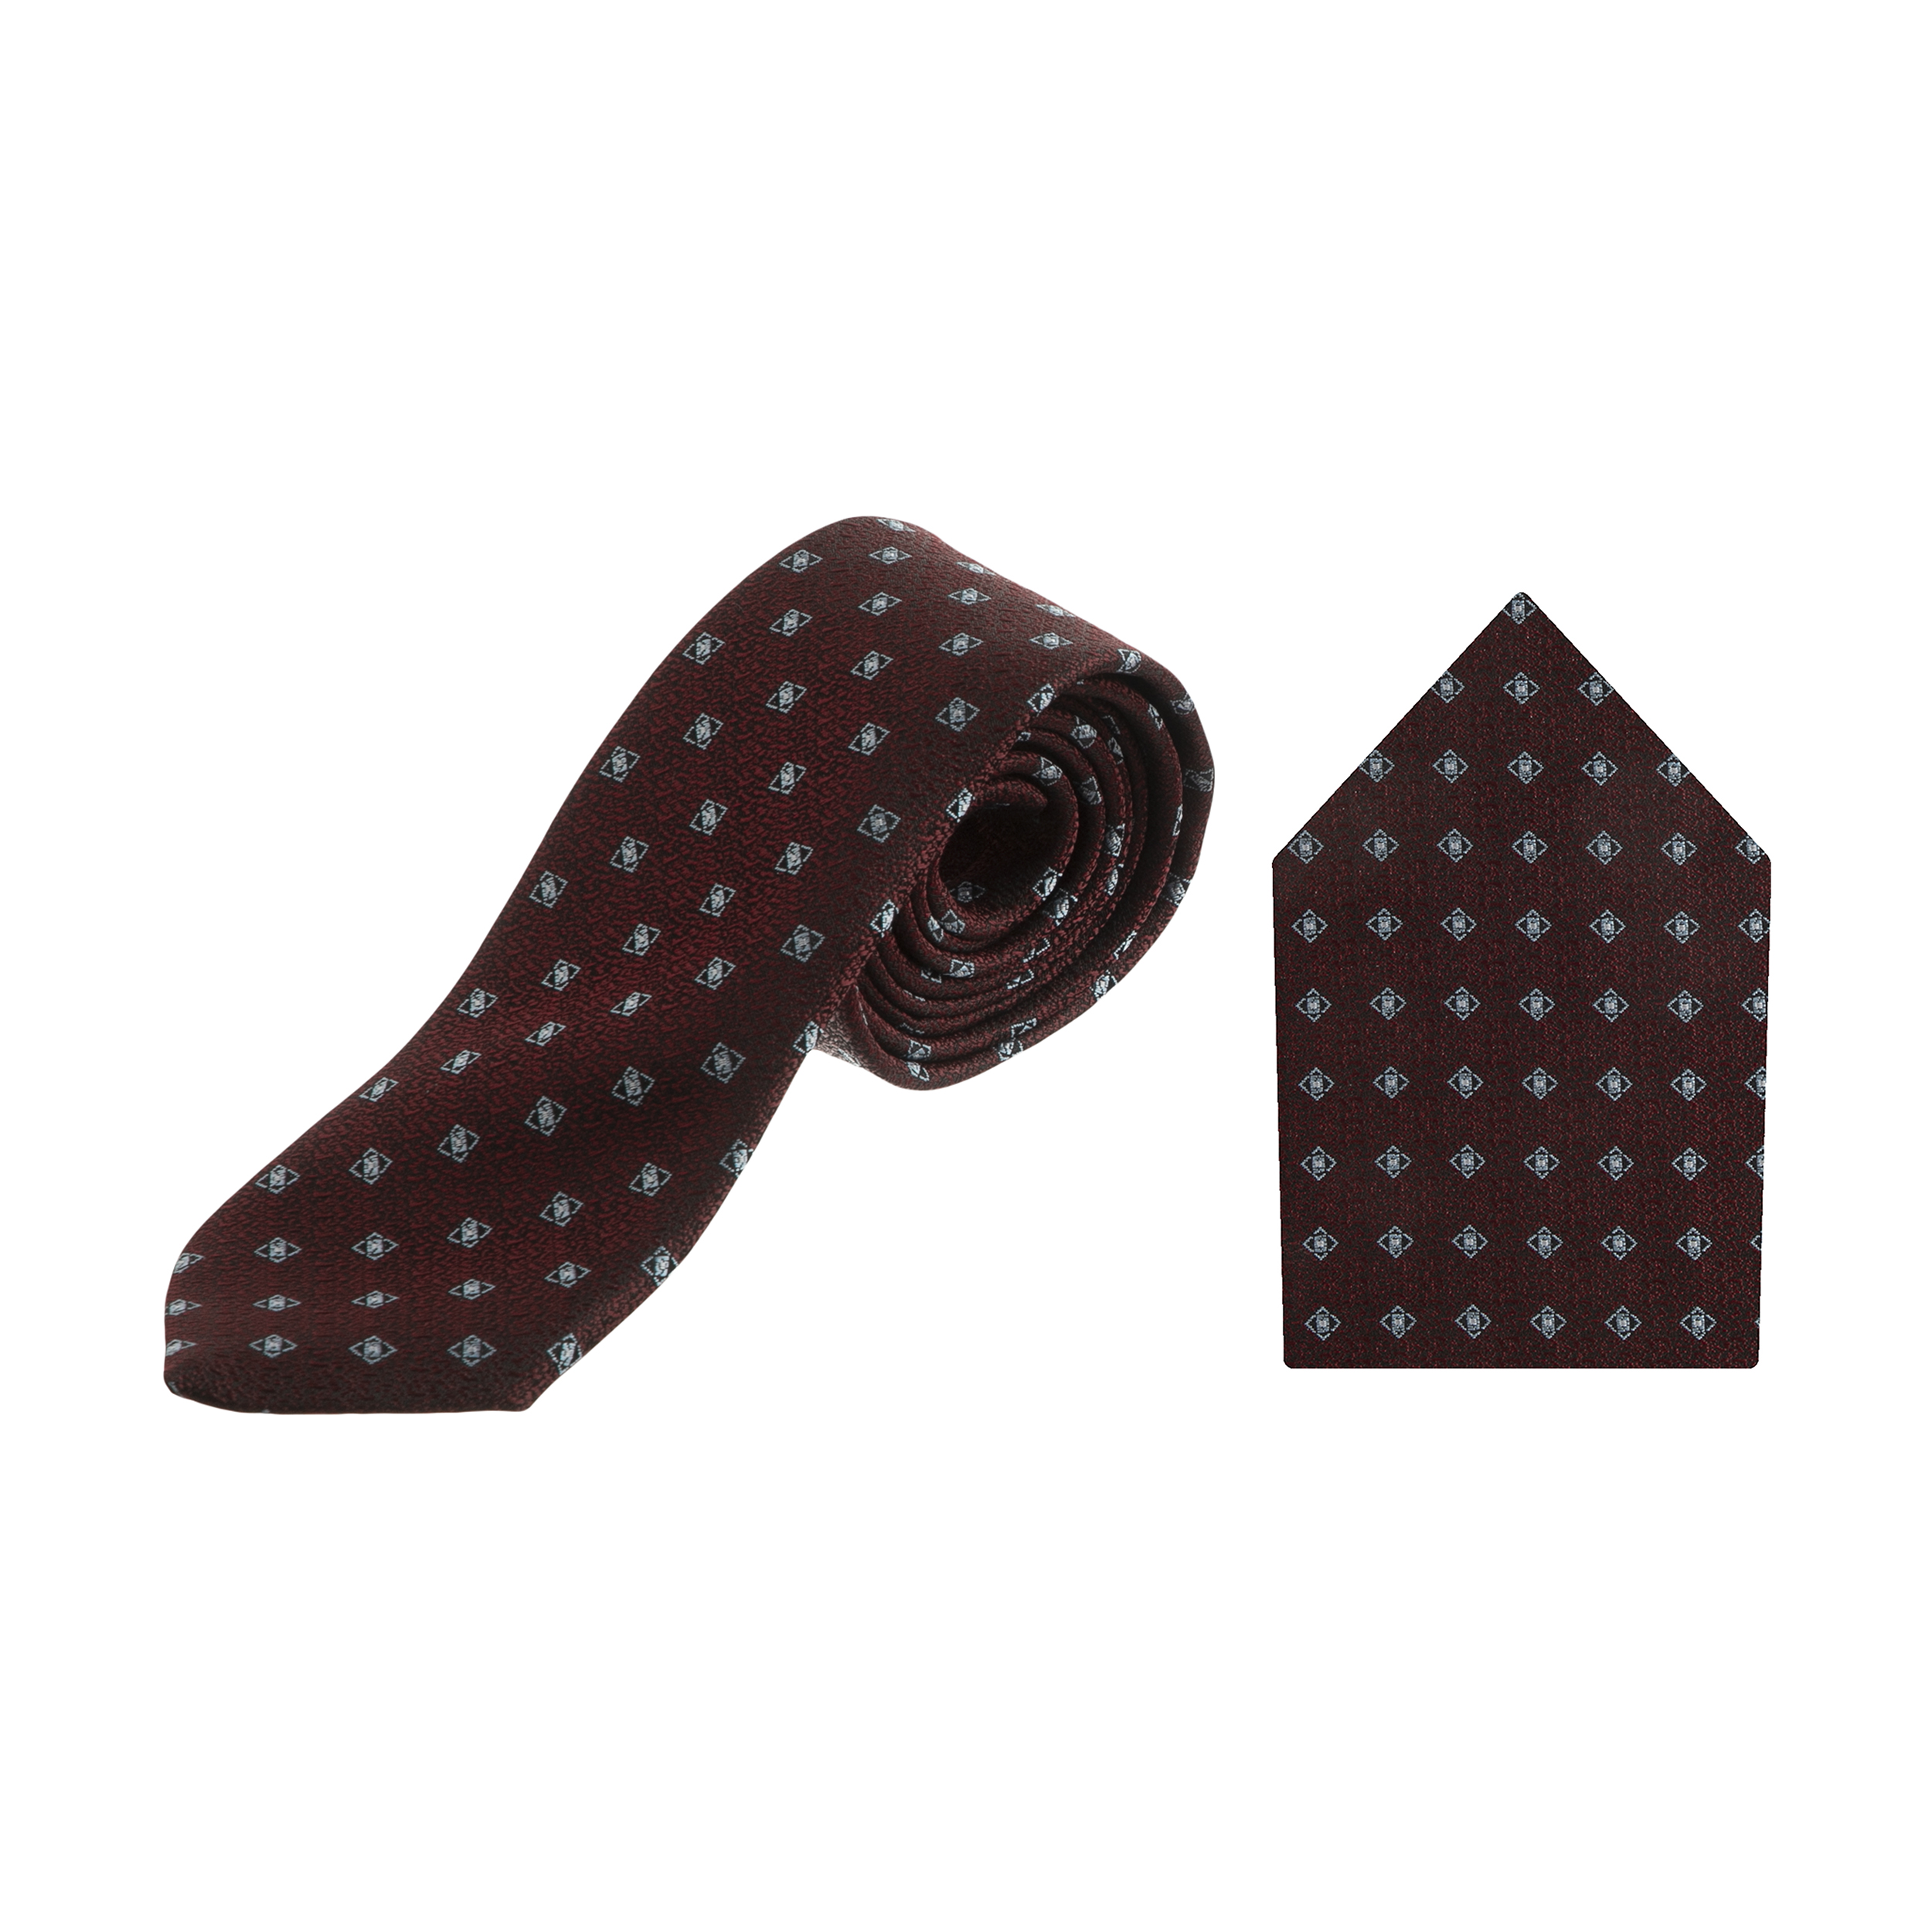 ست کراوات و دستمال جیب مردانه سردانالو مدل ایتالیا